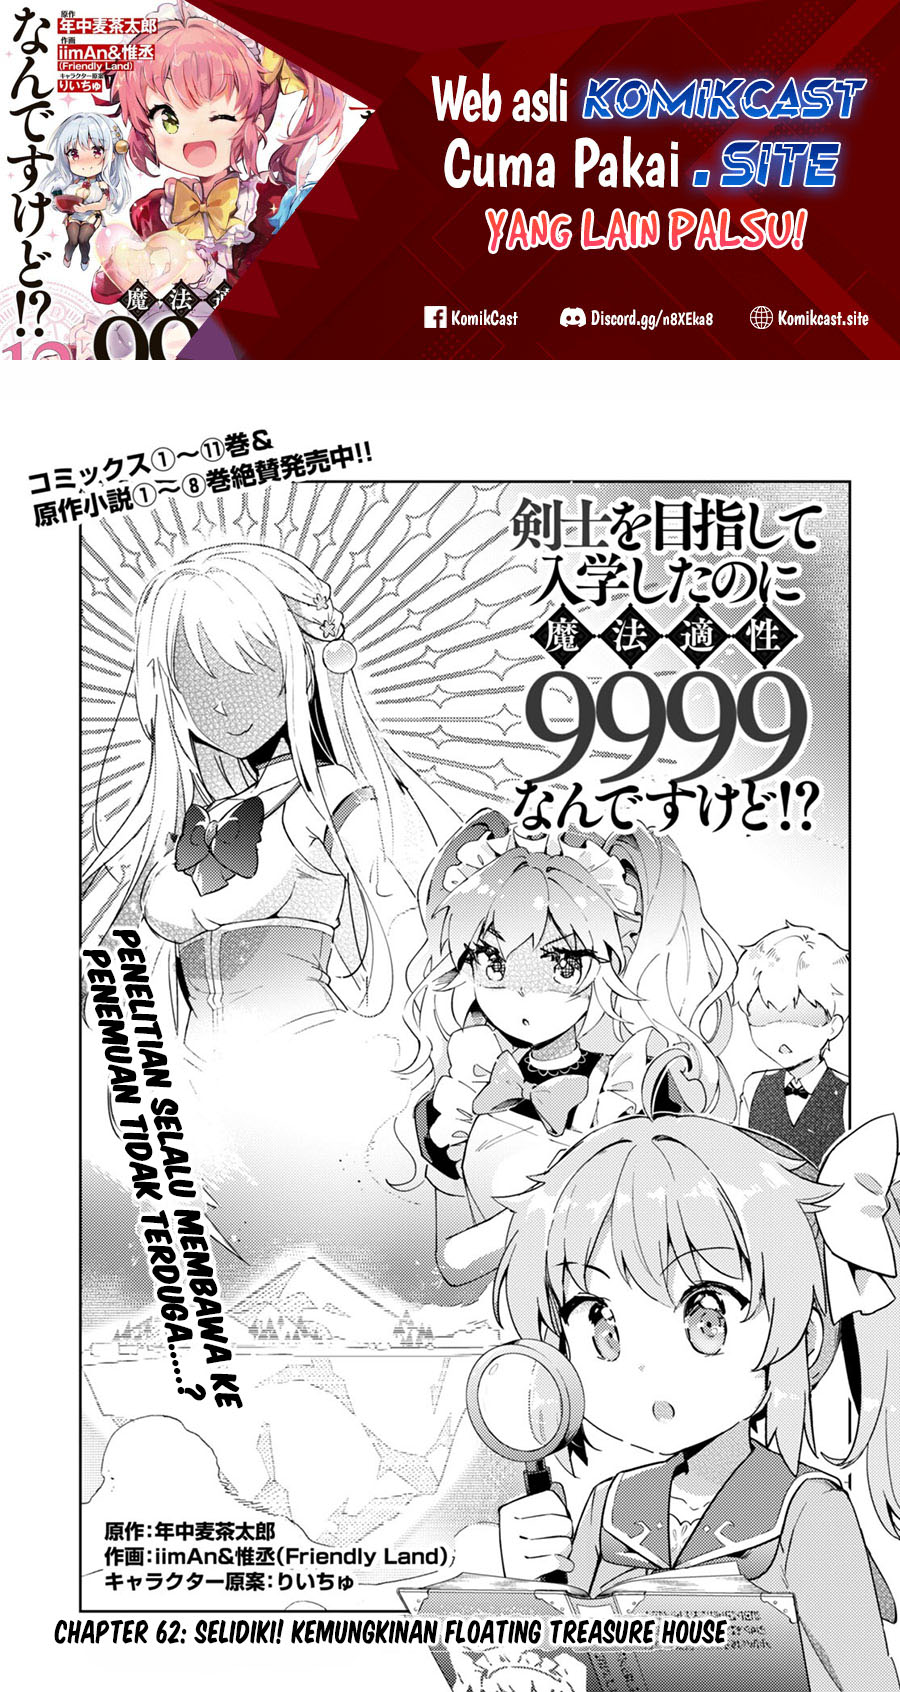 Baca Manga Kenshi wo Mezashite Nyuugaku shita no ni Mahou Tekisei 9999 nan desu kedo!? Chapter 62 Gambar 2